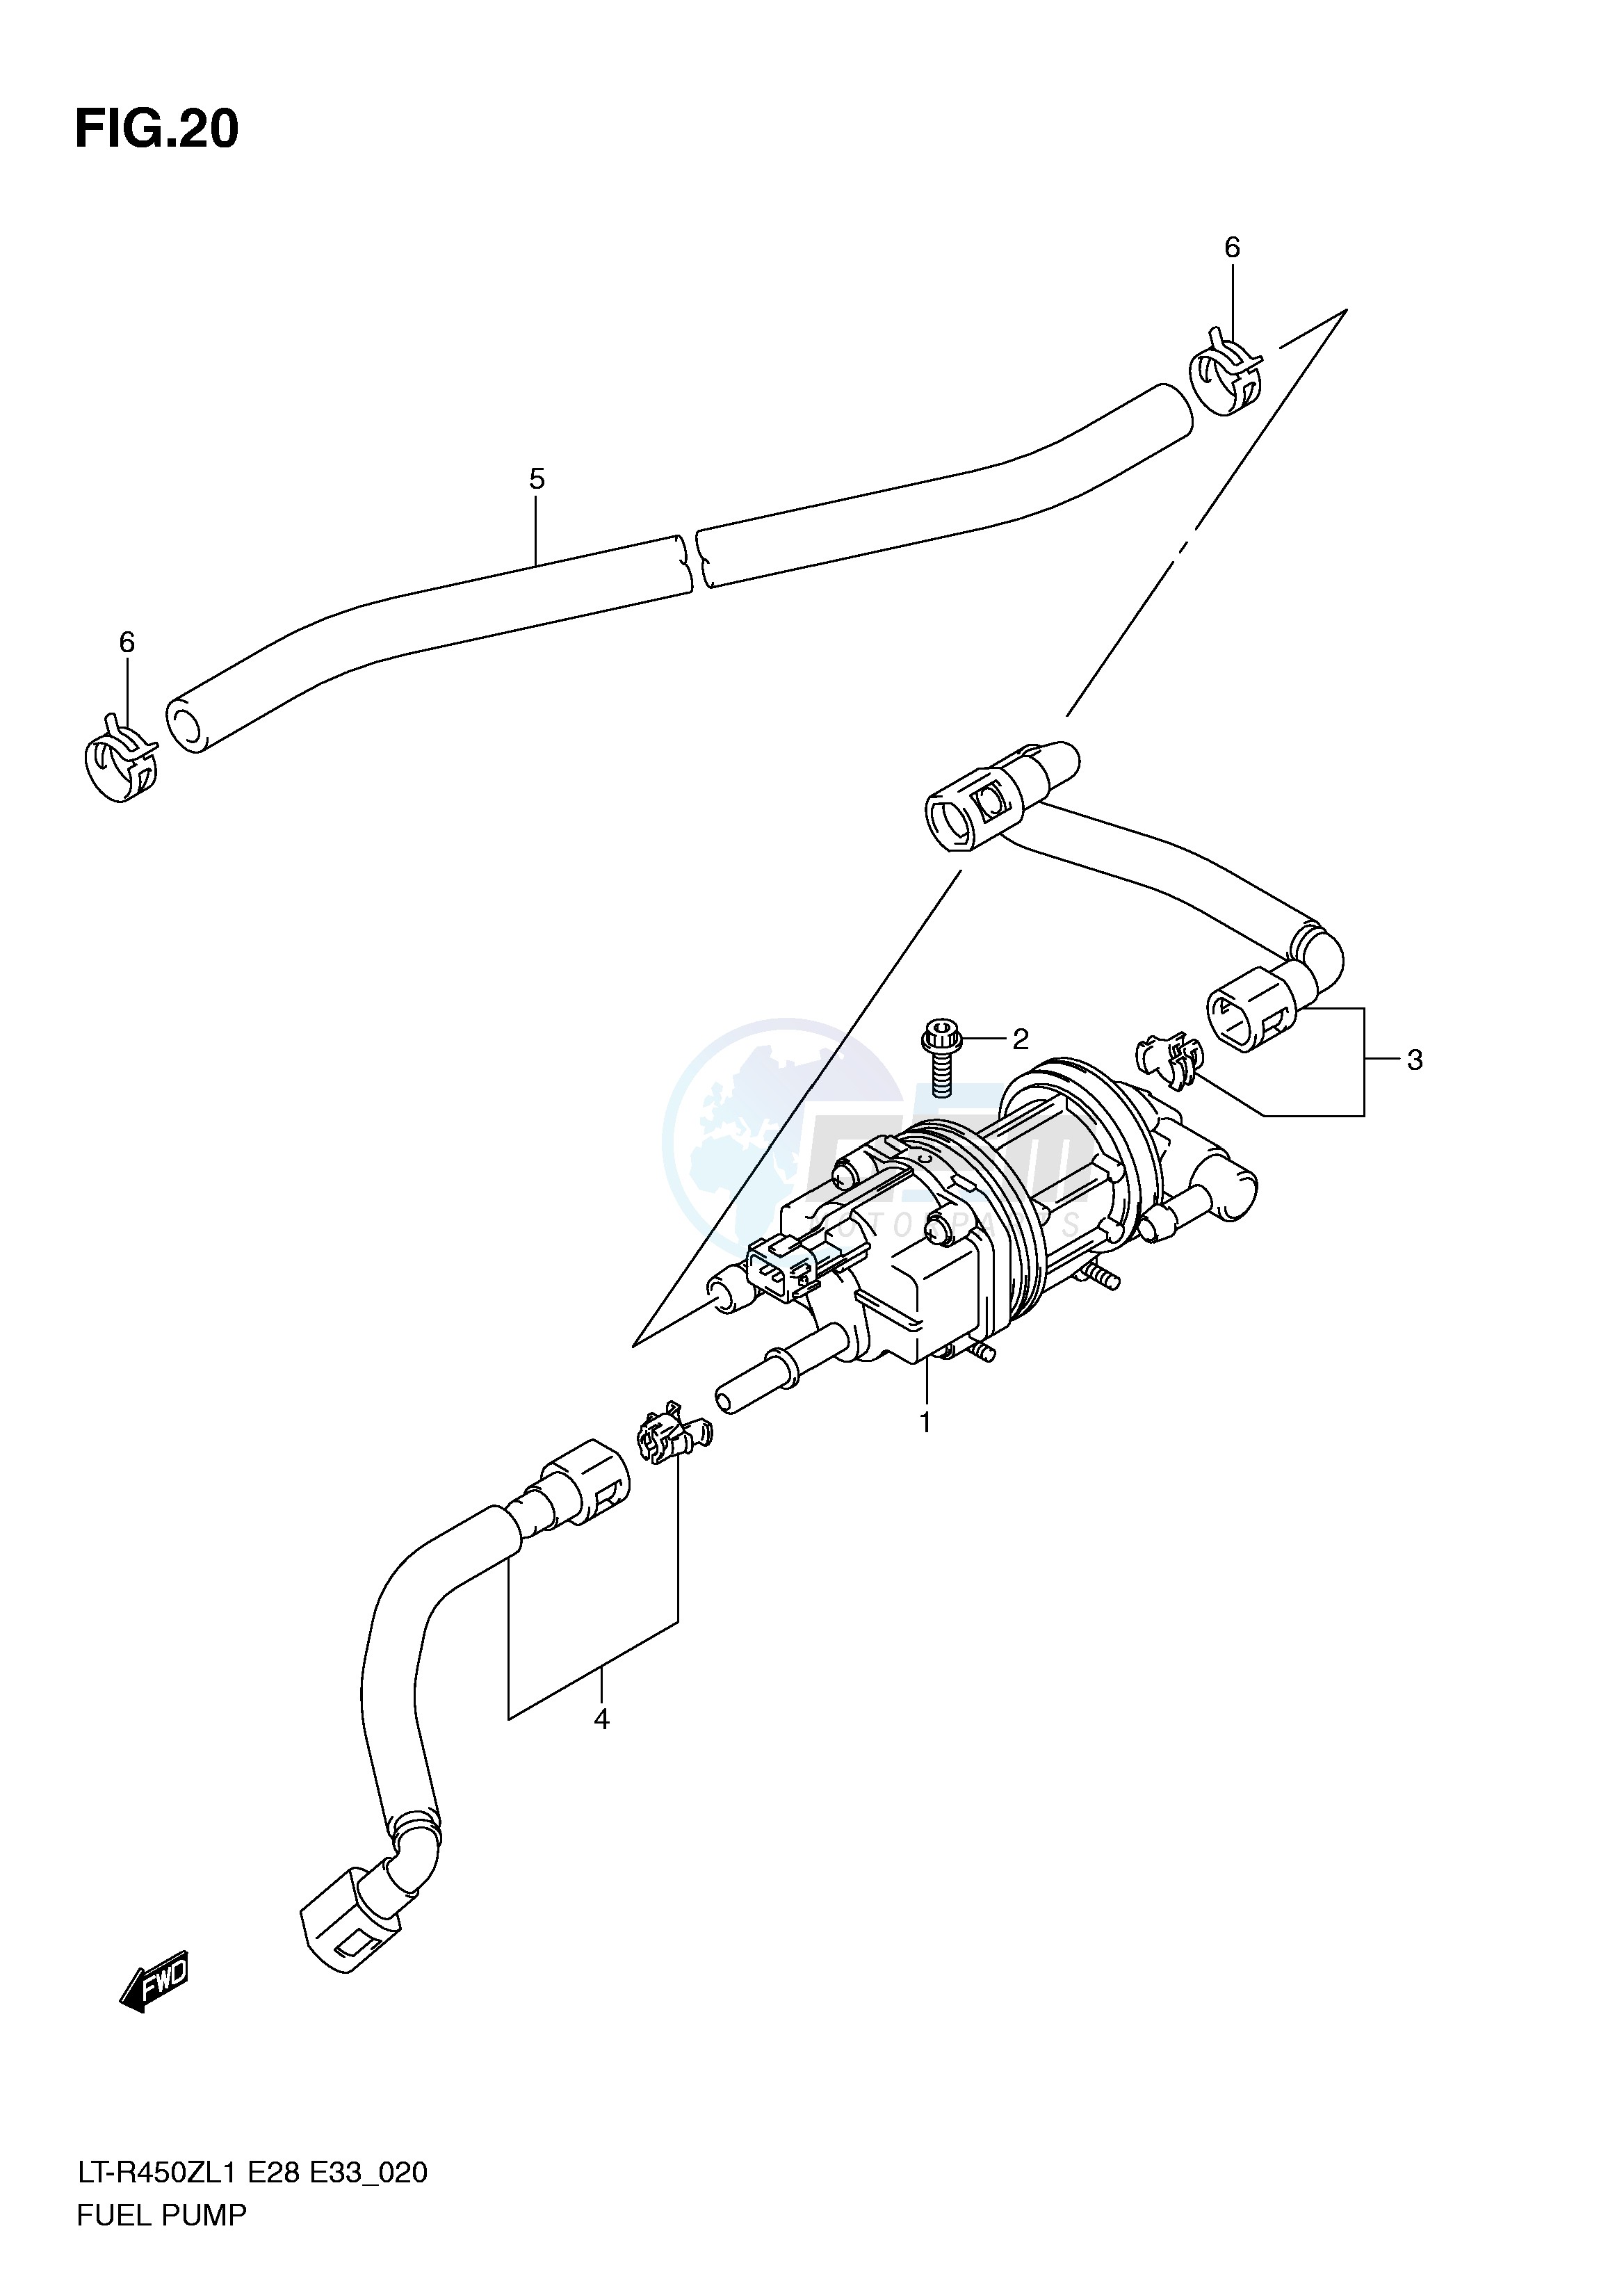 FUEL PUMP (LT-R450ZL1 E28) blueprint